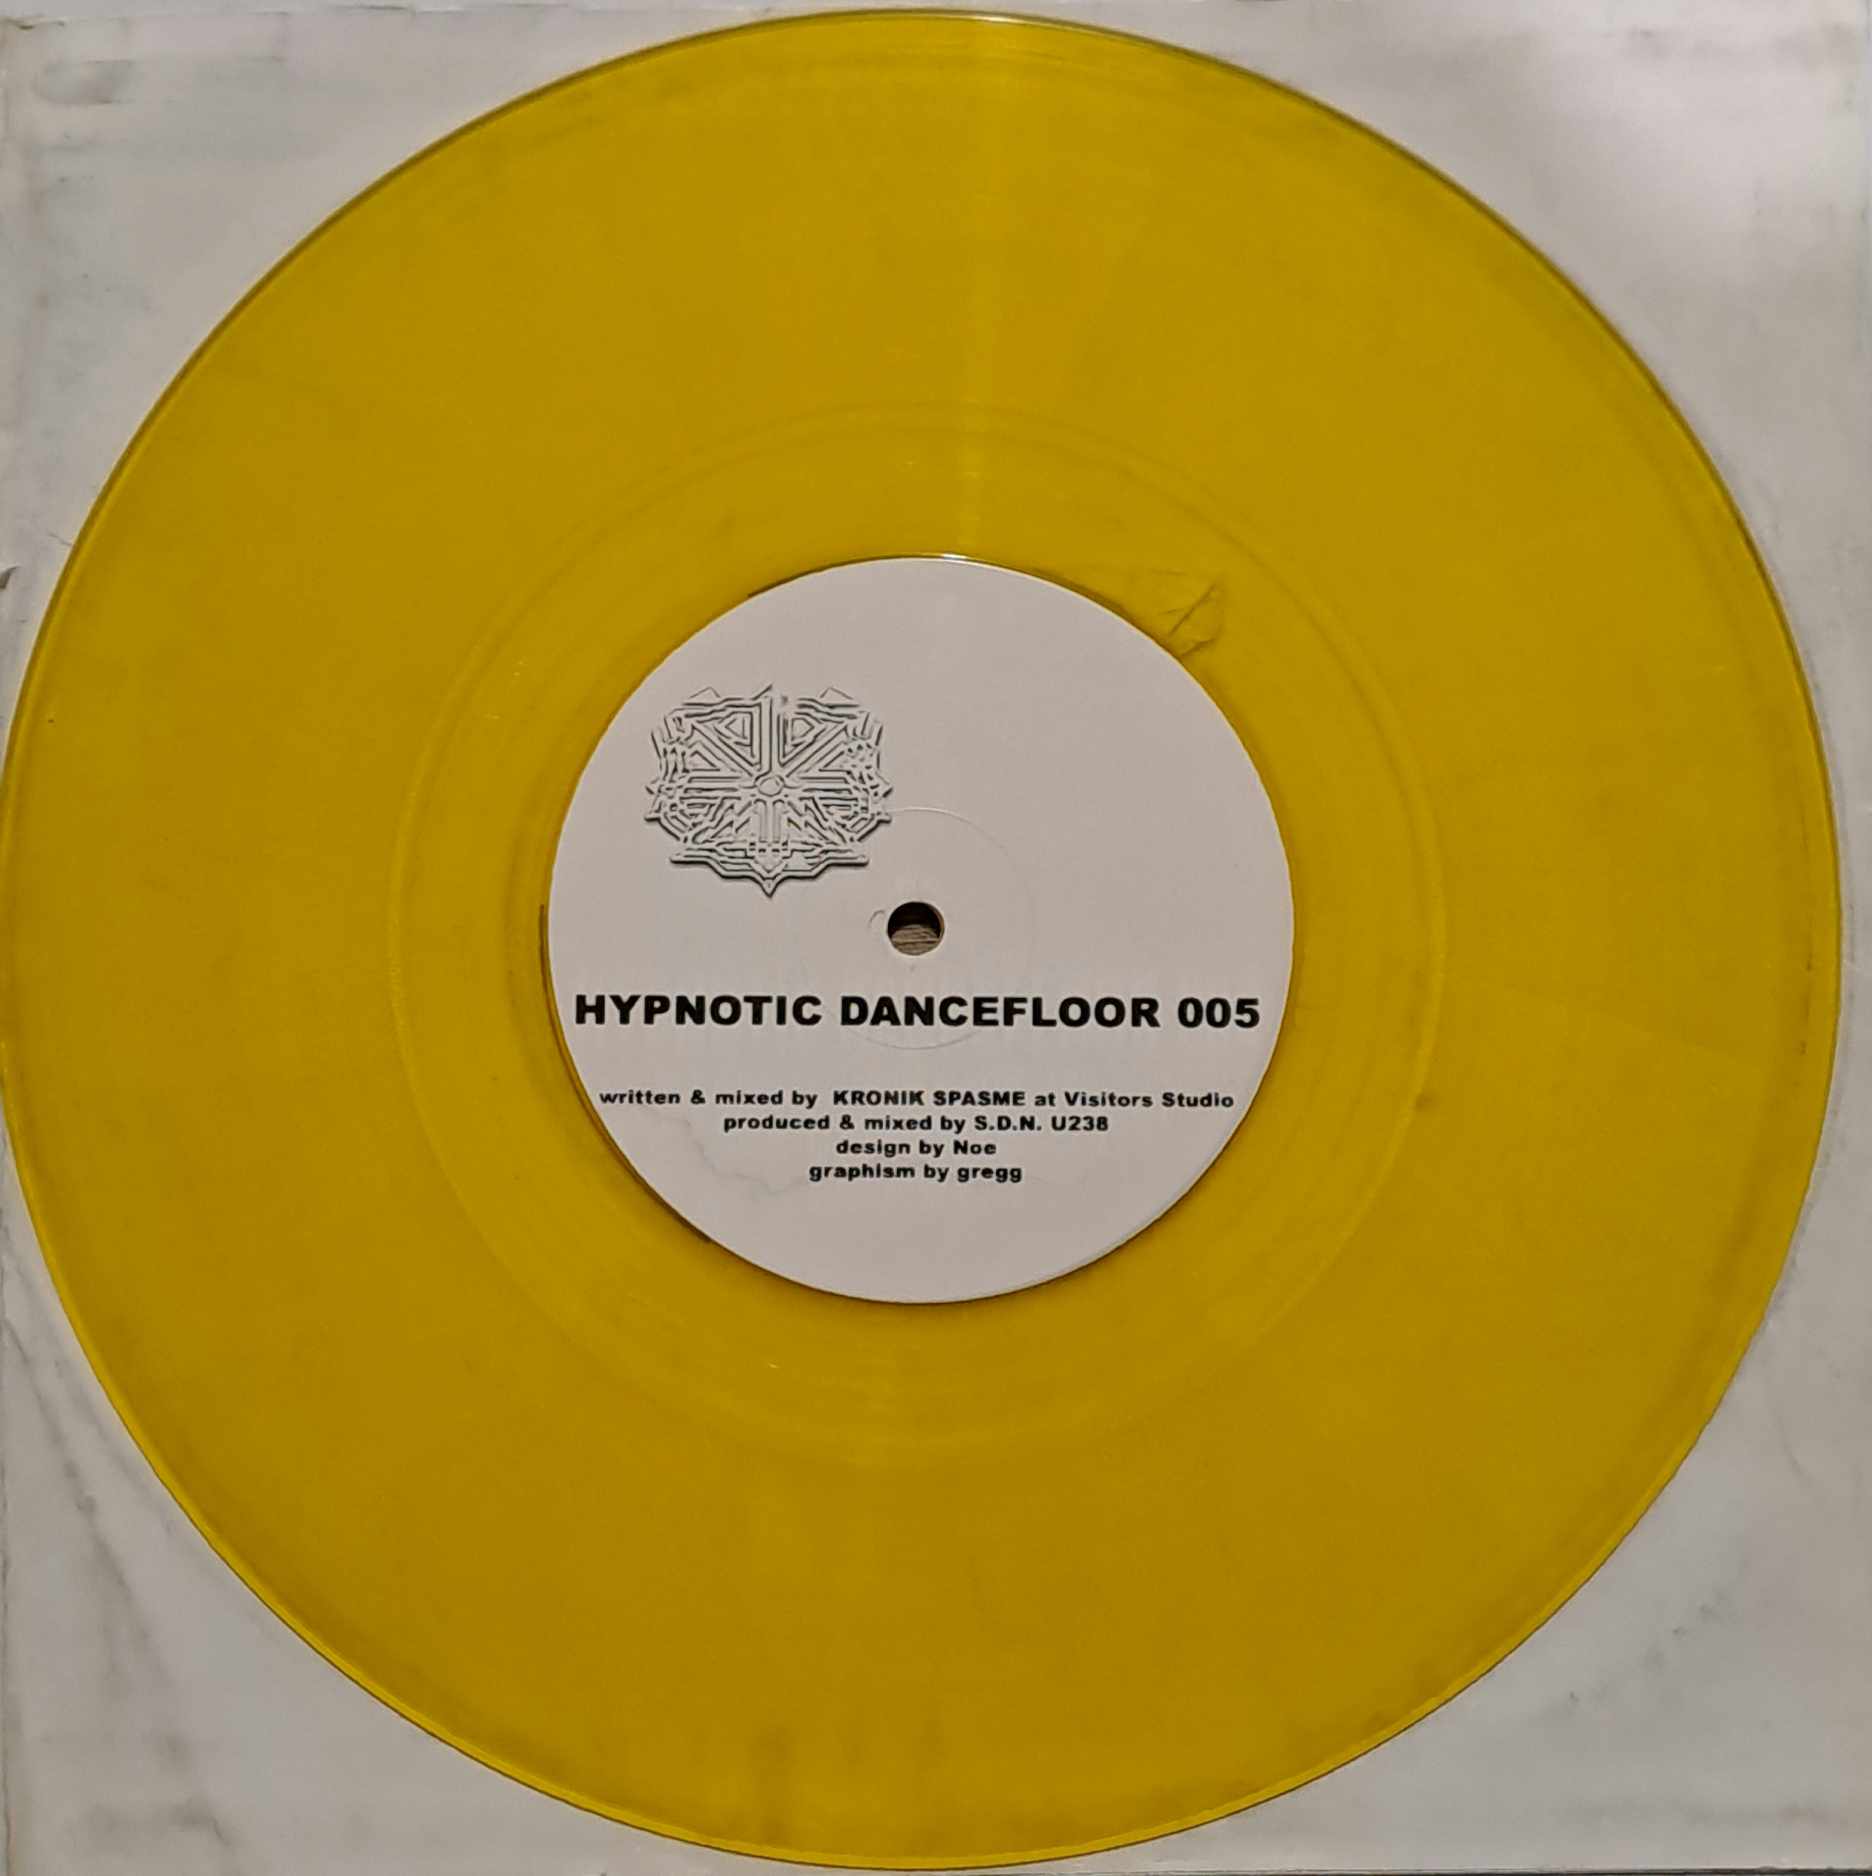 Hypnotic Dancefloor 005 - vinyle Breakbeat
